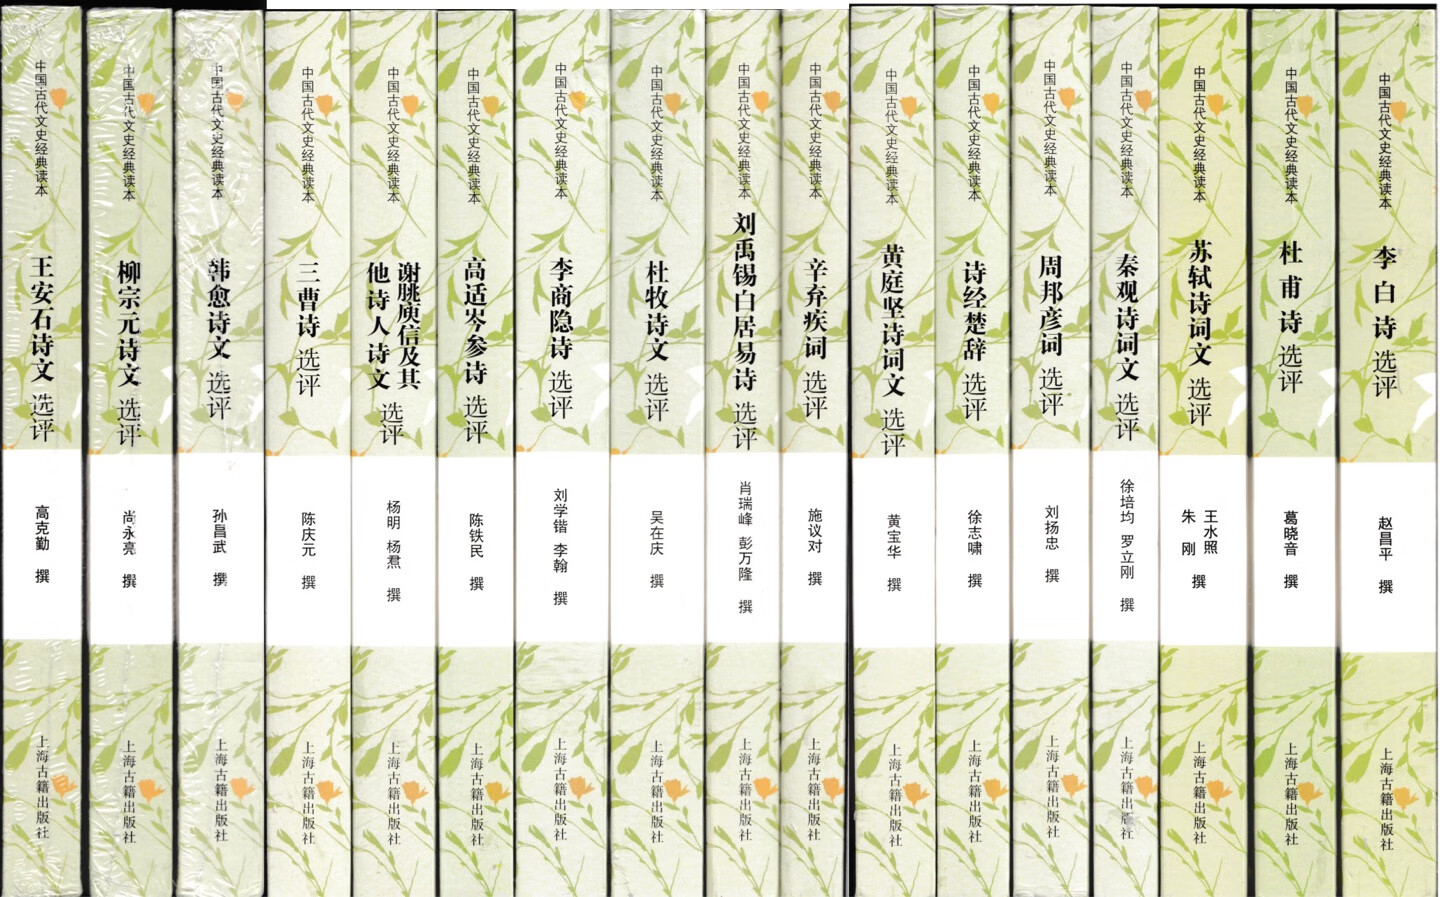 618，400-280，无法拒绝。中华书局、上海古籍的诗词书都不错、买齐全套慢慢读。